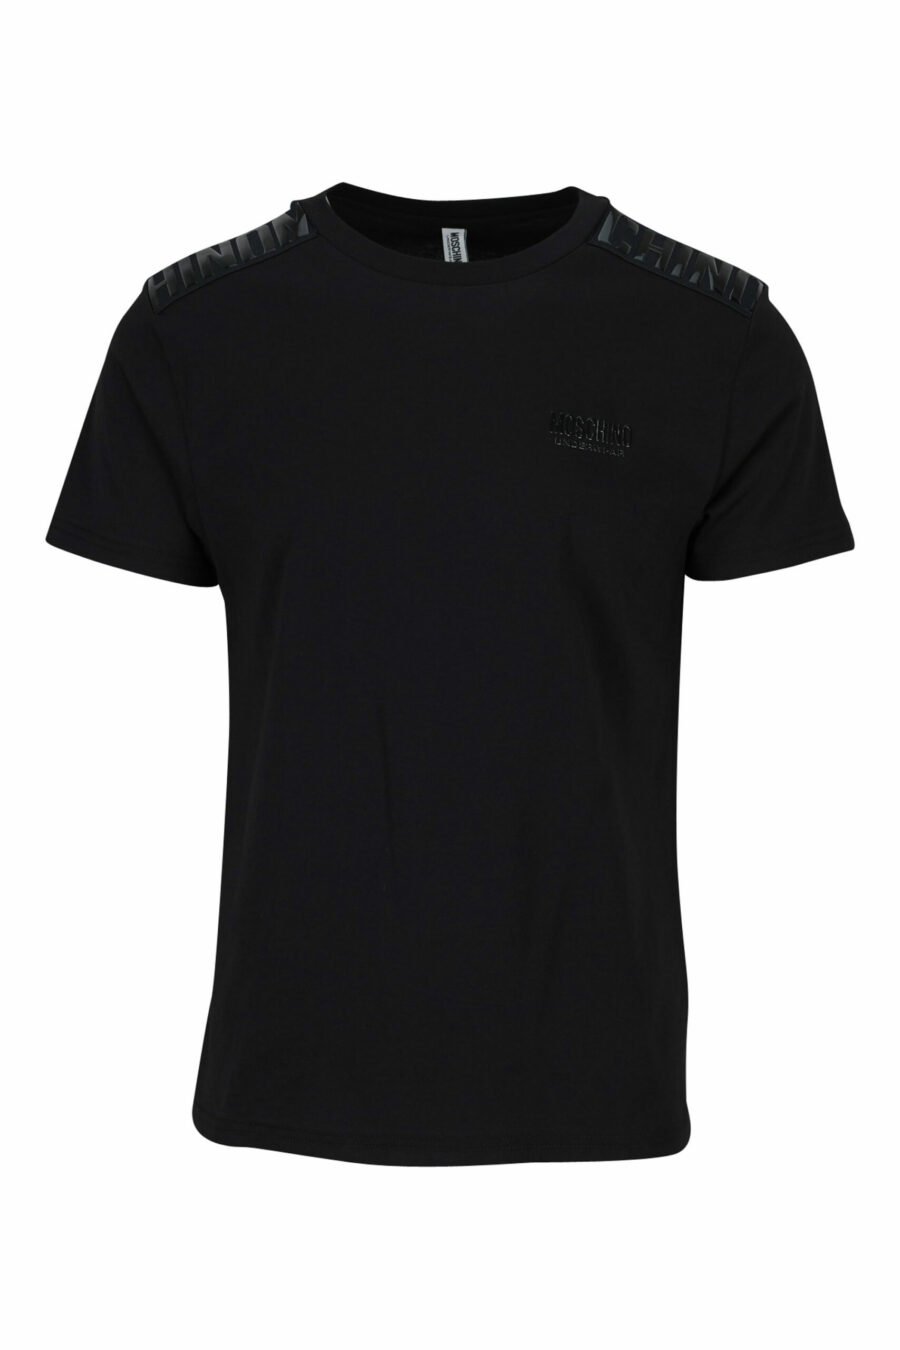 T-shirt noir avec bande logo monochrome sur les épaules - 889316992724 scaled